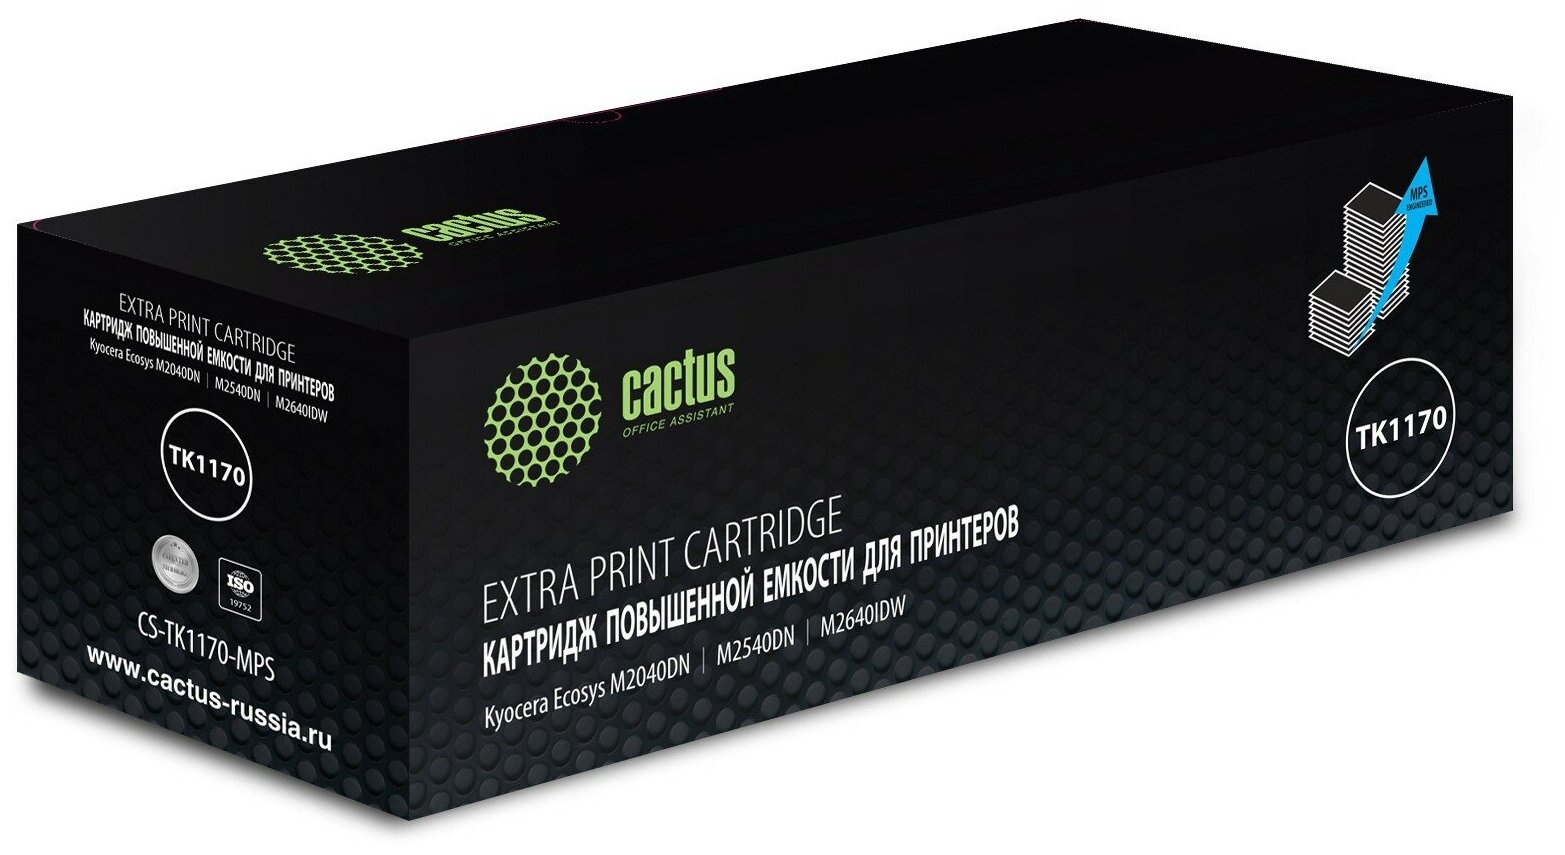 Картридж Cactus CS-TK1170-MPS TK-1170X черный, для KYOCERA Ecosys M2040dn/ M2540dn/M2640idw, ресурс до 12000 страниц